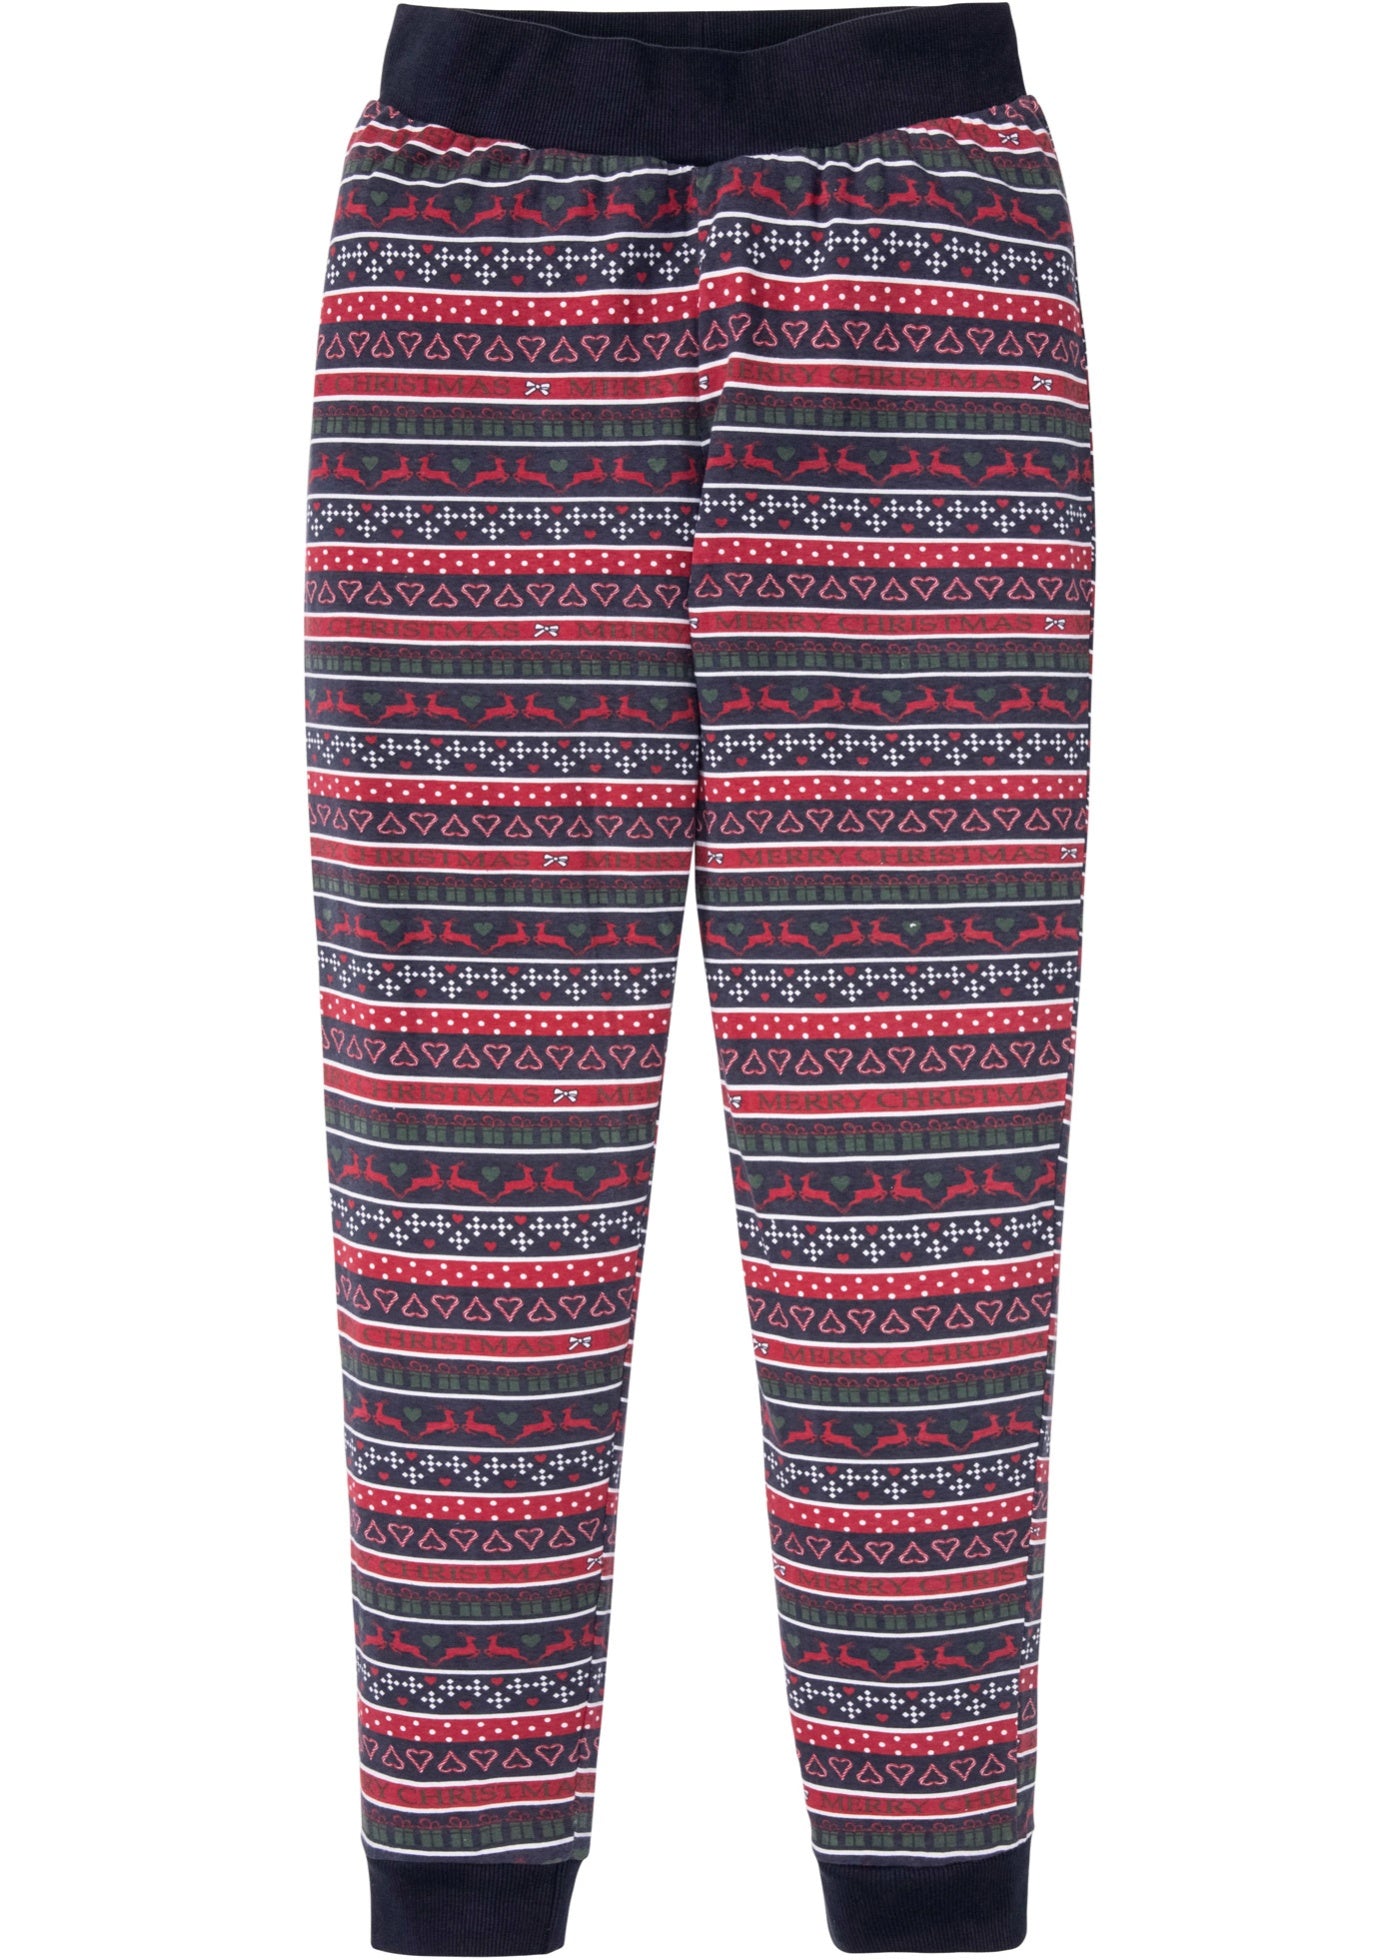 Polo Ralph Lauren Big  Tall Supreme Comfort Pajama Pants  Dillards